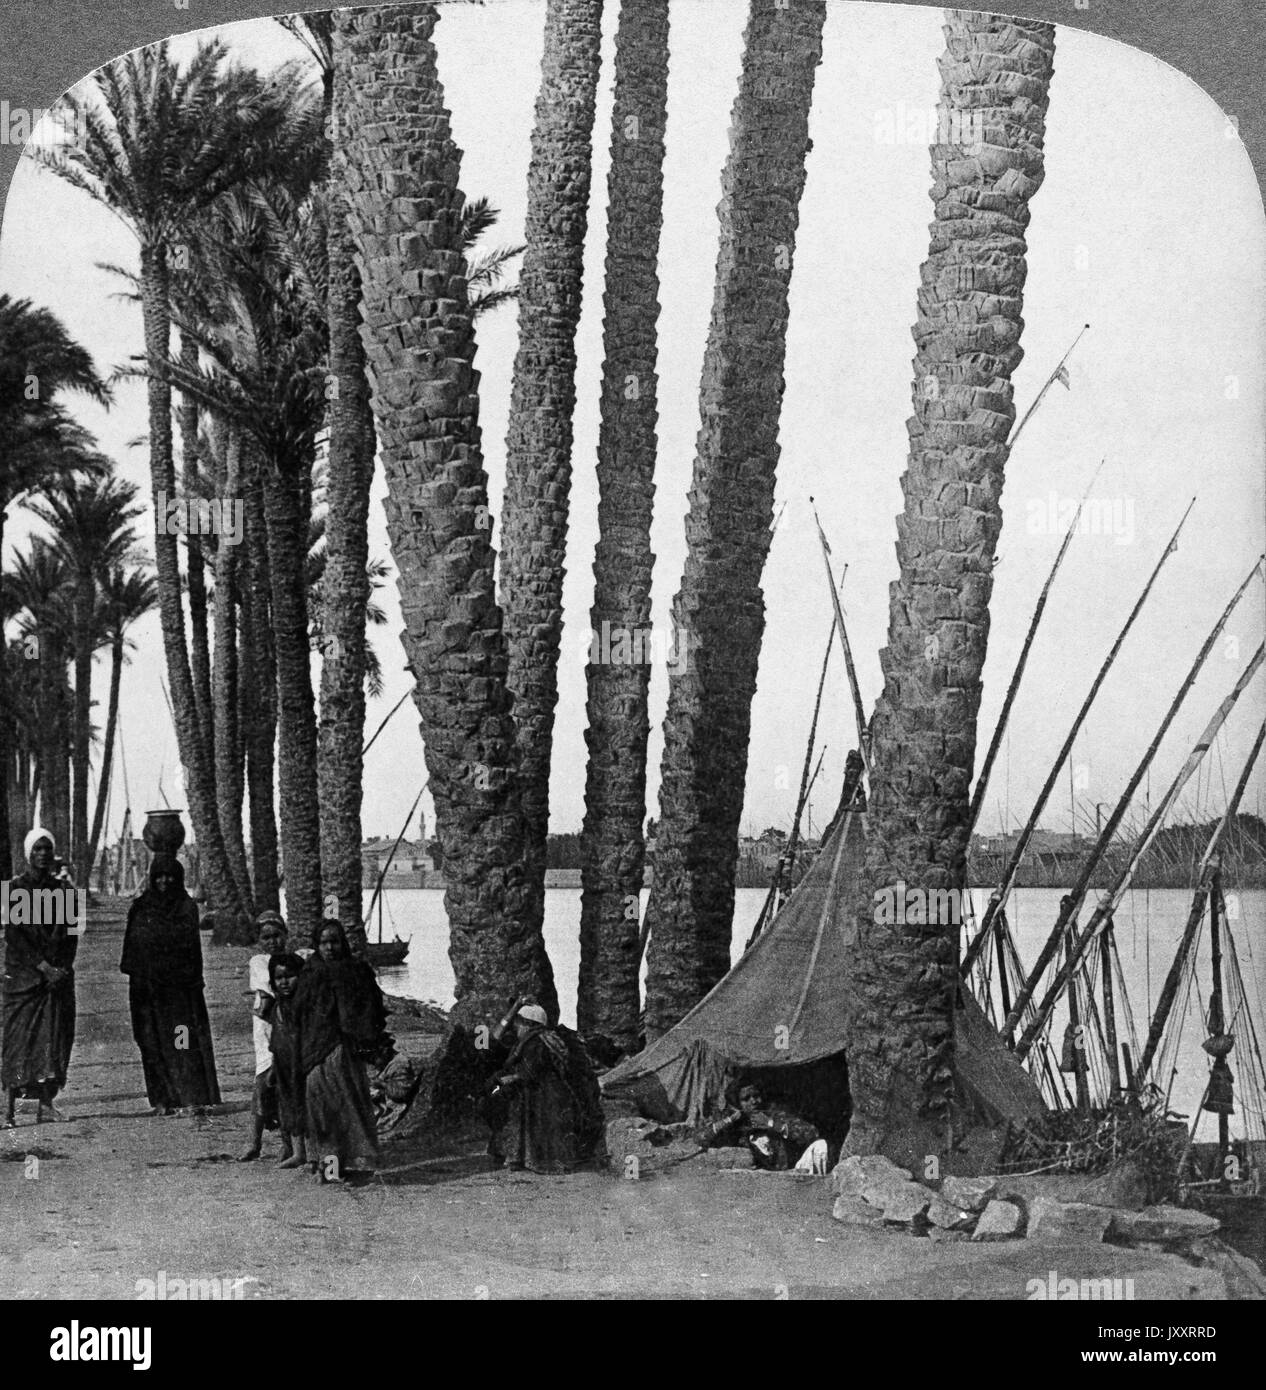 Die von eingefaßten Palmen Ufer des Nils, Ägypten 1896. Ses Nil, l'Égypte 1896. Banque D'Images